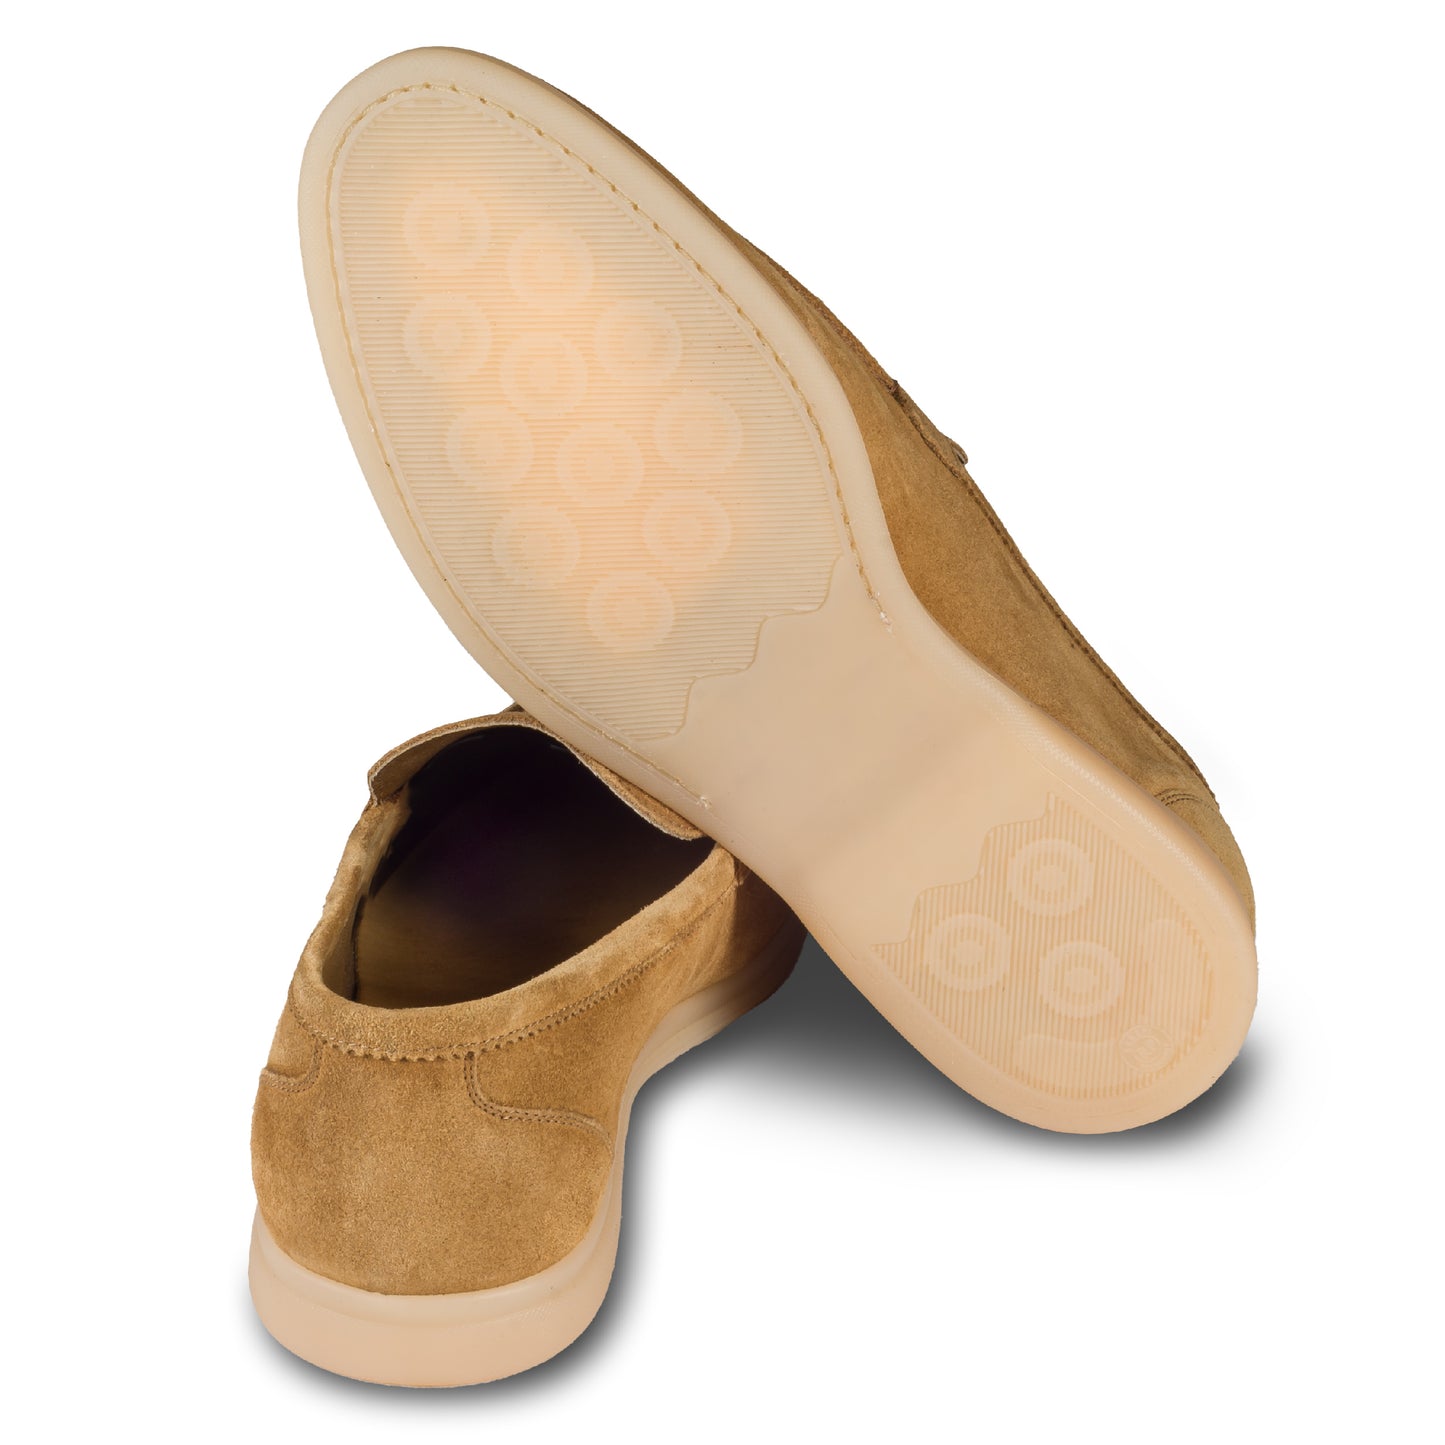 Brecos Italienische Herren-Loafer aus weichem Veloursleder in cognak braun. Mit leichter Gummisohle.  Ansicht der Ferse und Sohlenunterseite. 